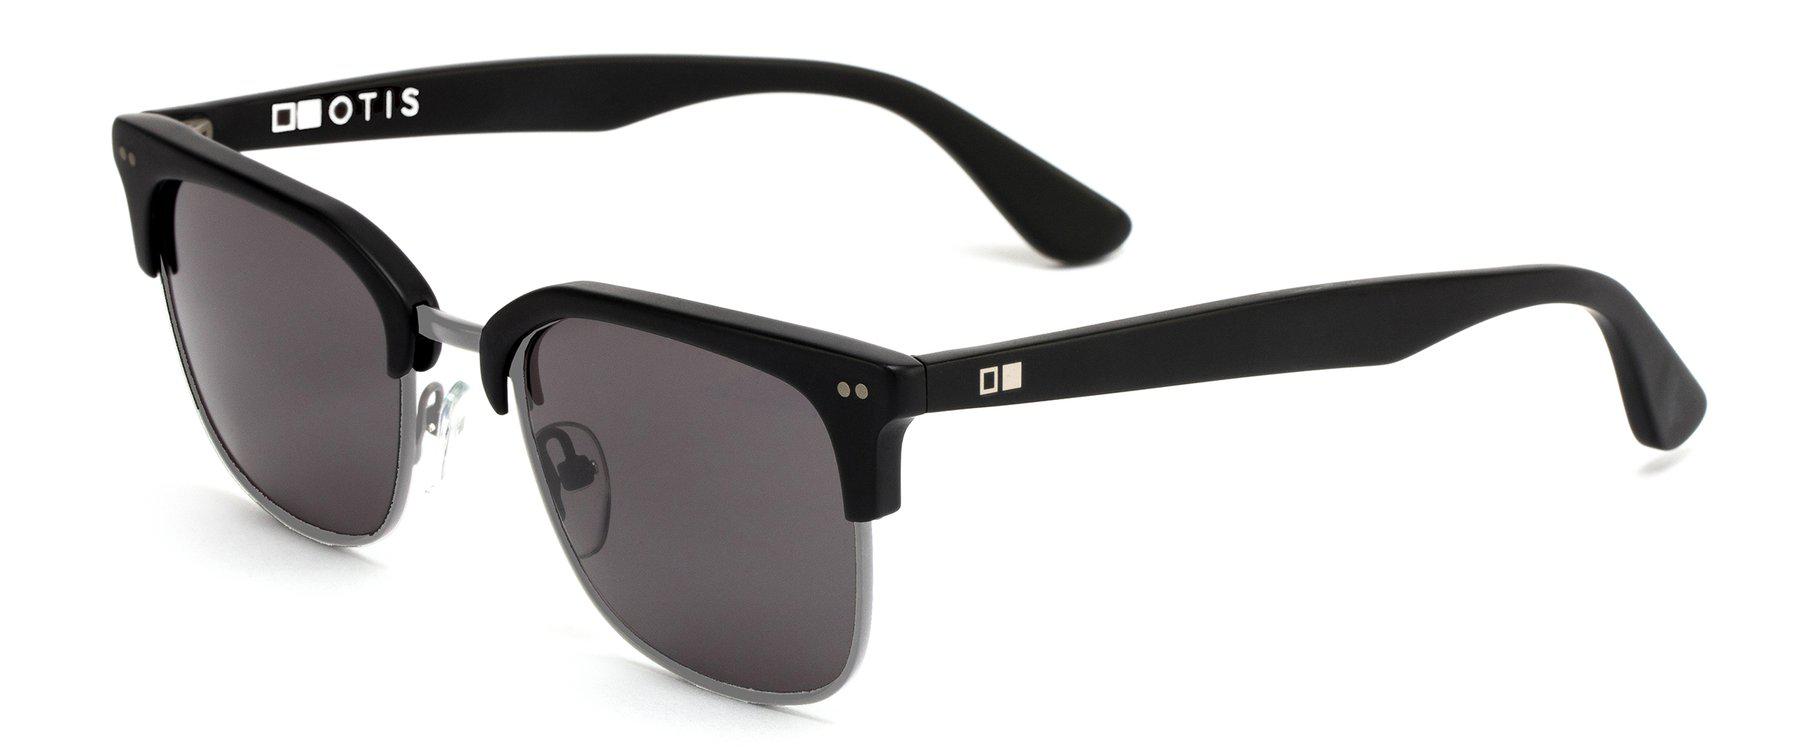 Otis 100 Club Matte Black/Brushed Gunmetal/Grey-UV400 non-polarised-9339740042164-125-1903-Otis Eyewear-Sunnieside